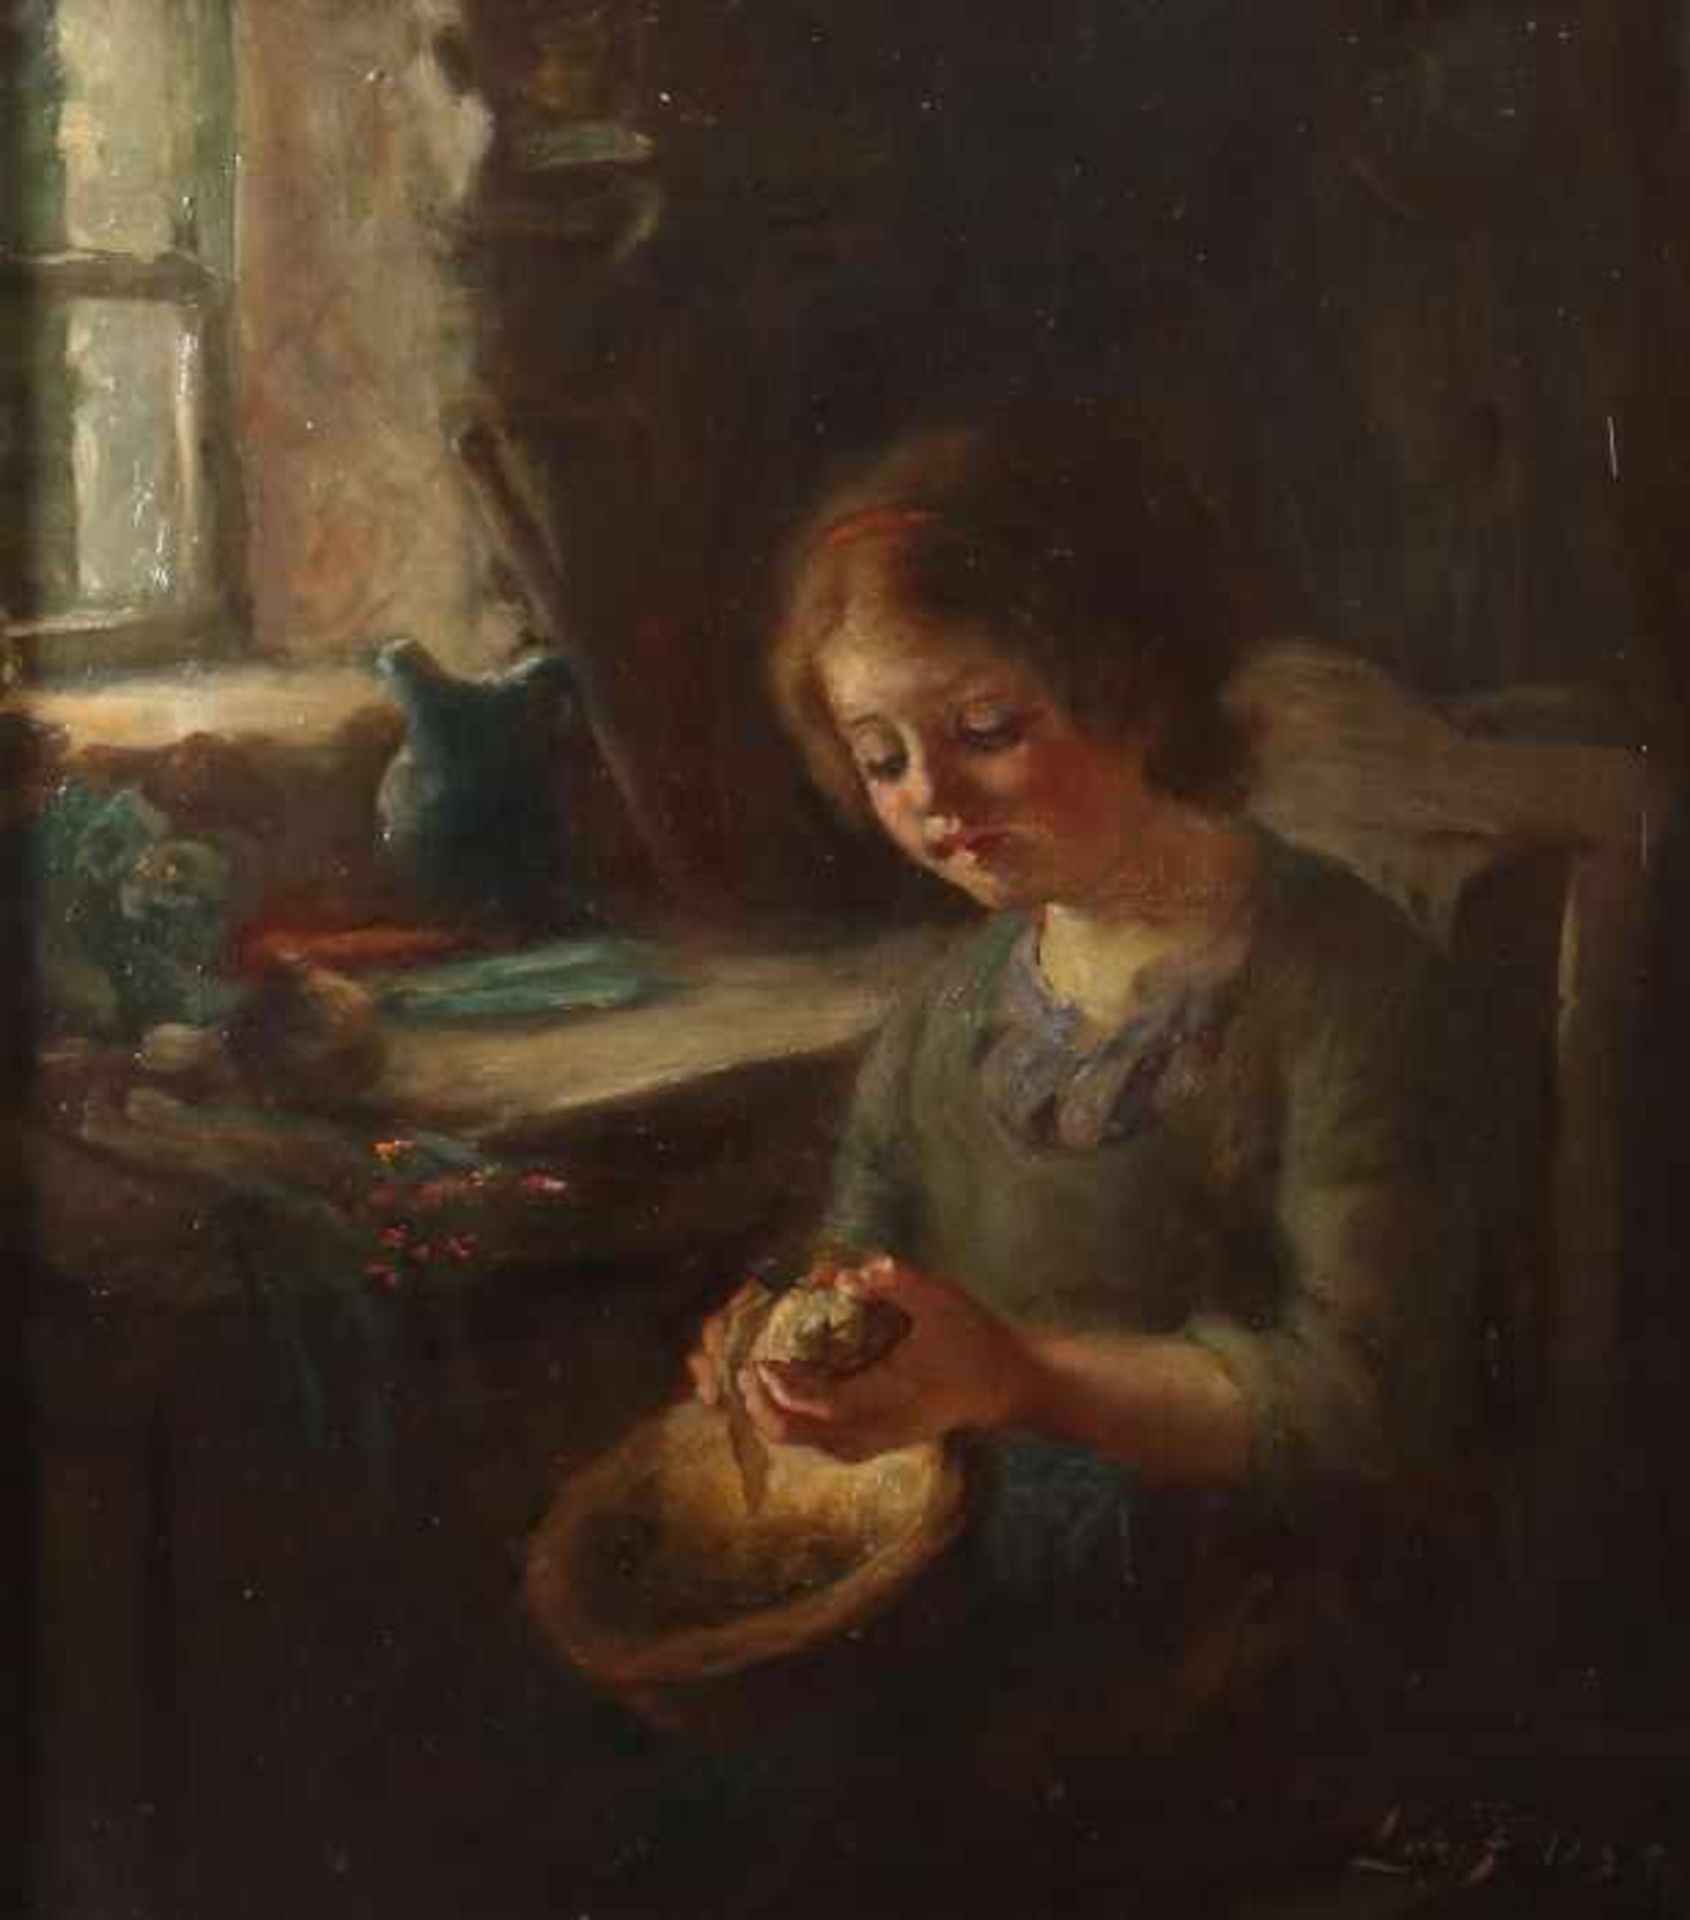 Fildes, Sir Samuel LukeLiverpool 1844 - 1927 London, Genre- und Portraitmaler, Schüler der South